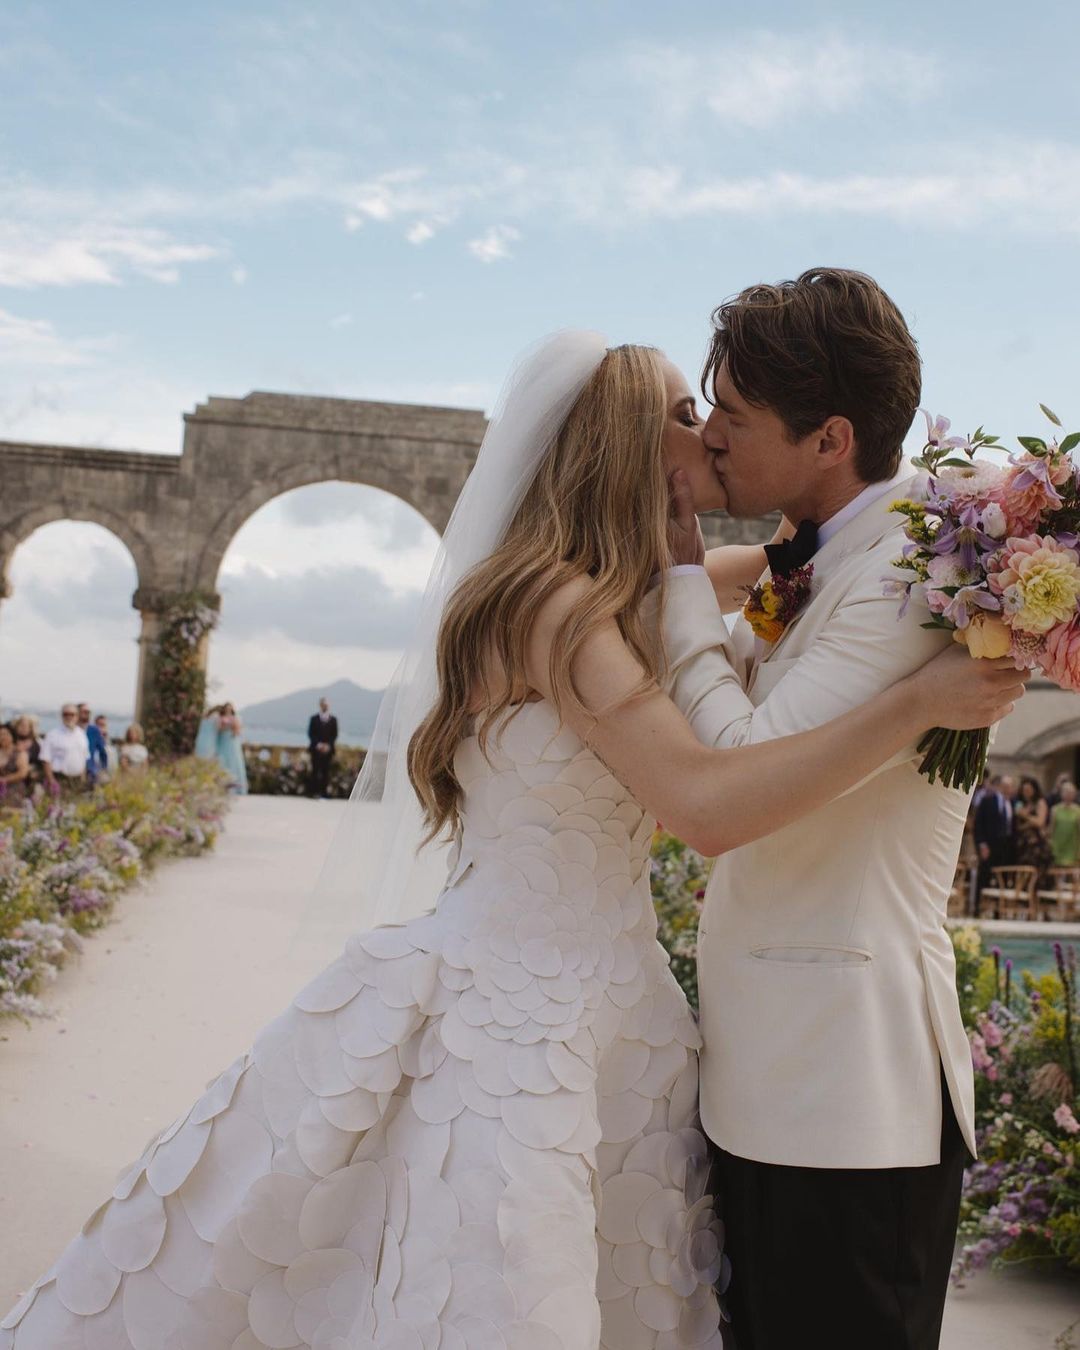 Joey King Marries Director Steven Piet in Intimate Wedding in Spain :  r/popculturechat